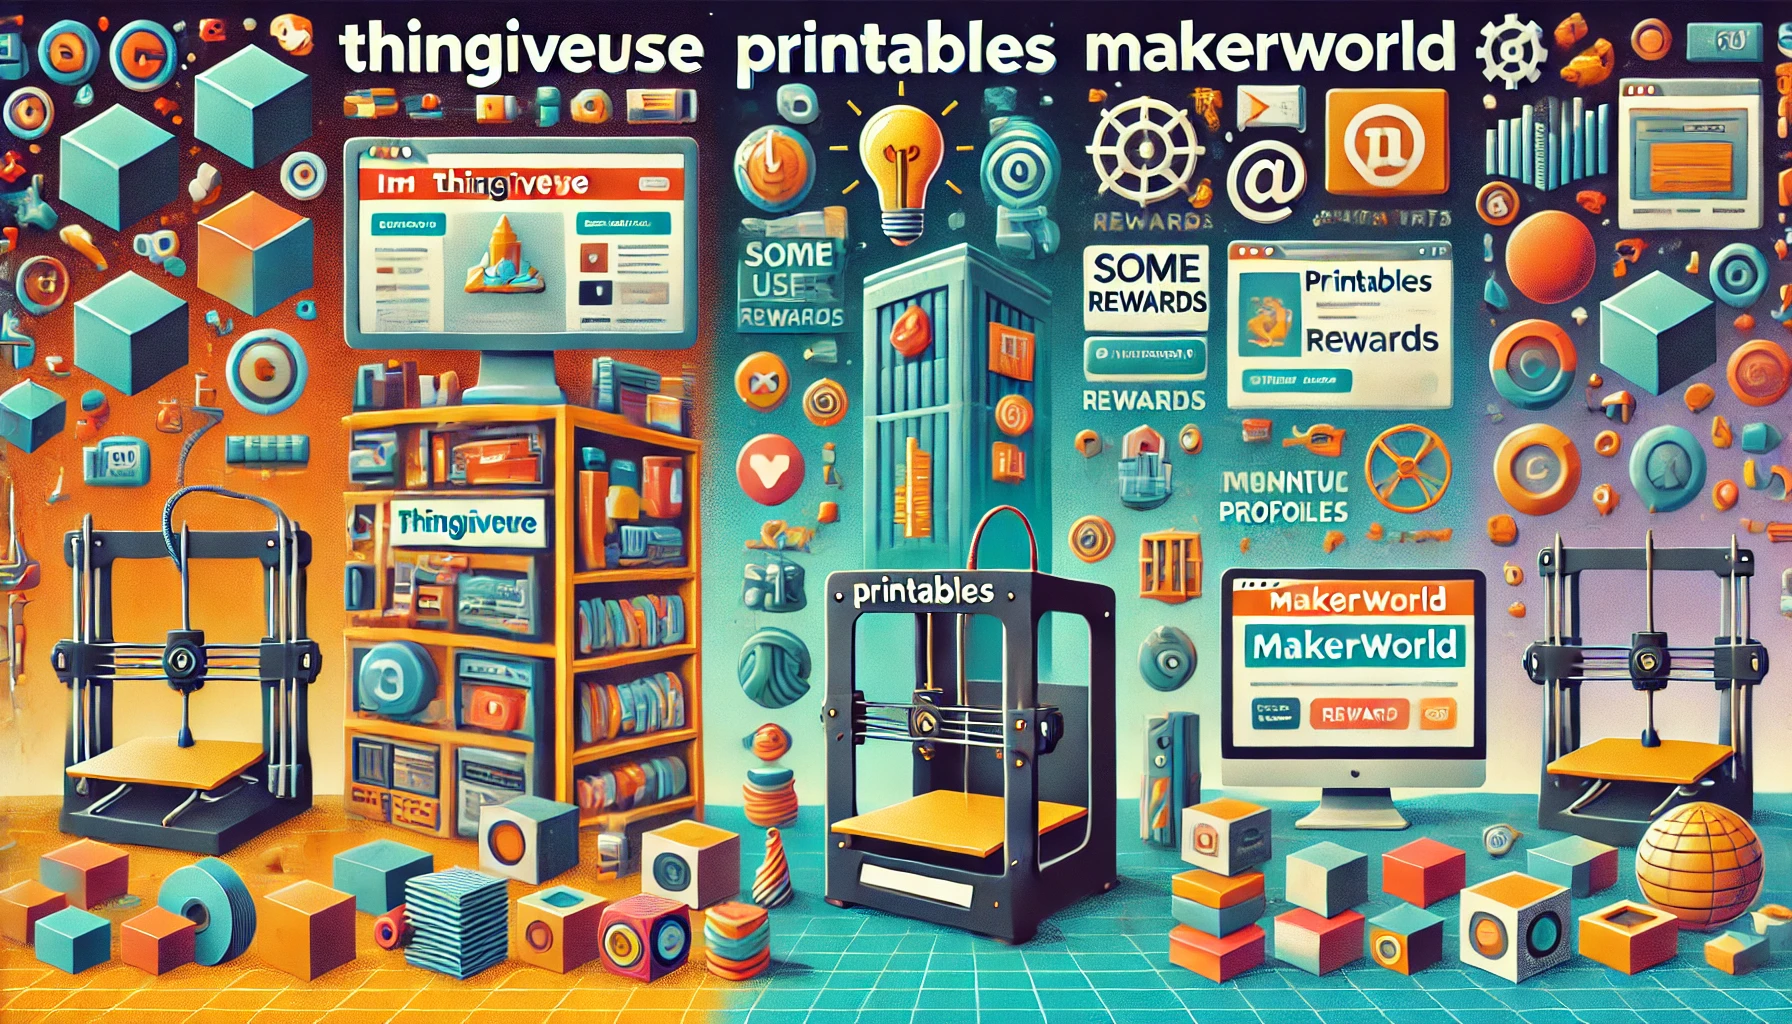 Vergleich von 3D Druck Seiten: Thingiverse, Printables und Makerworld